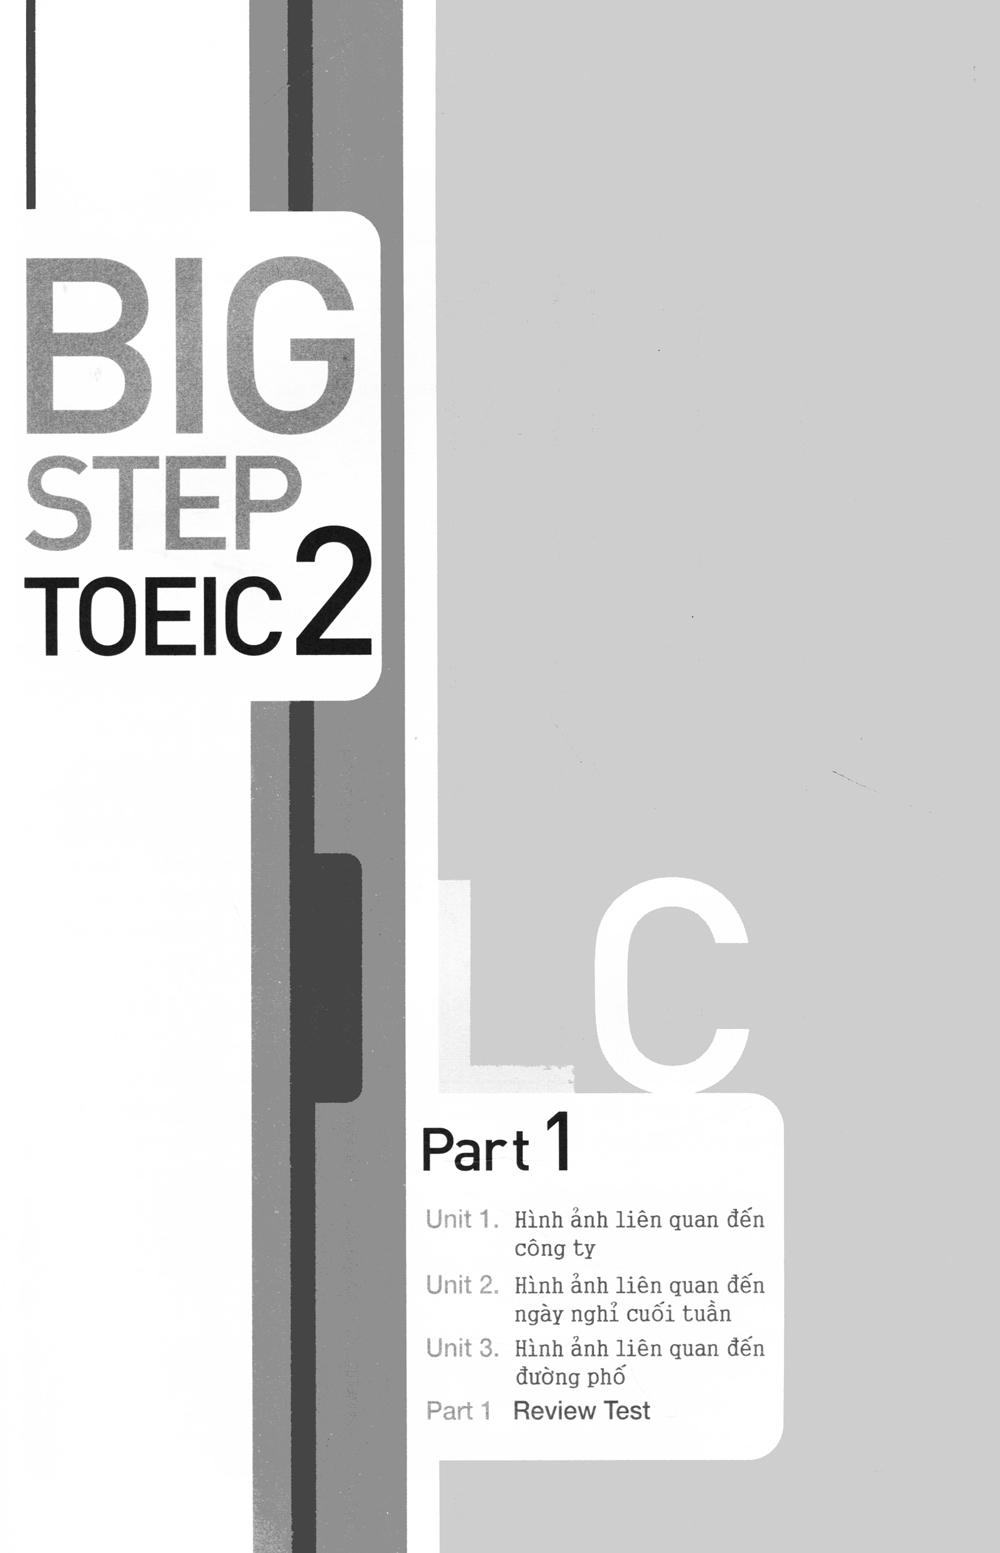 Big Step Toeic 2 LCRC PDF